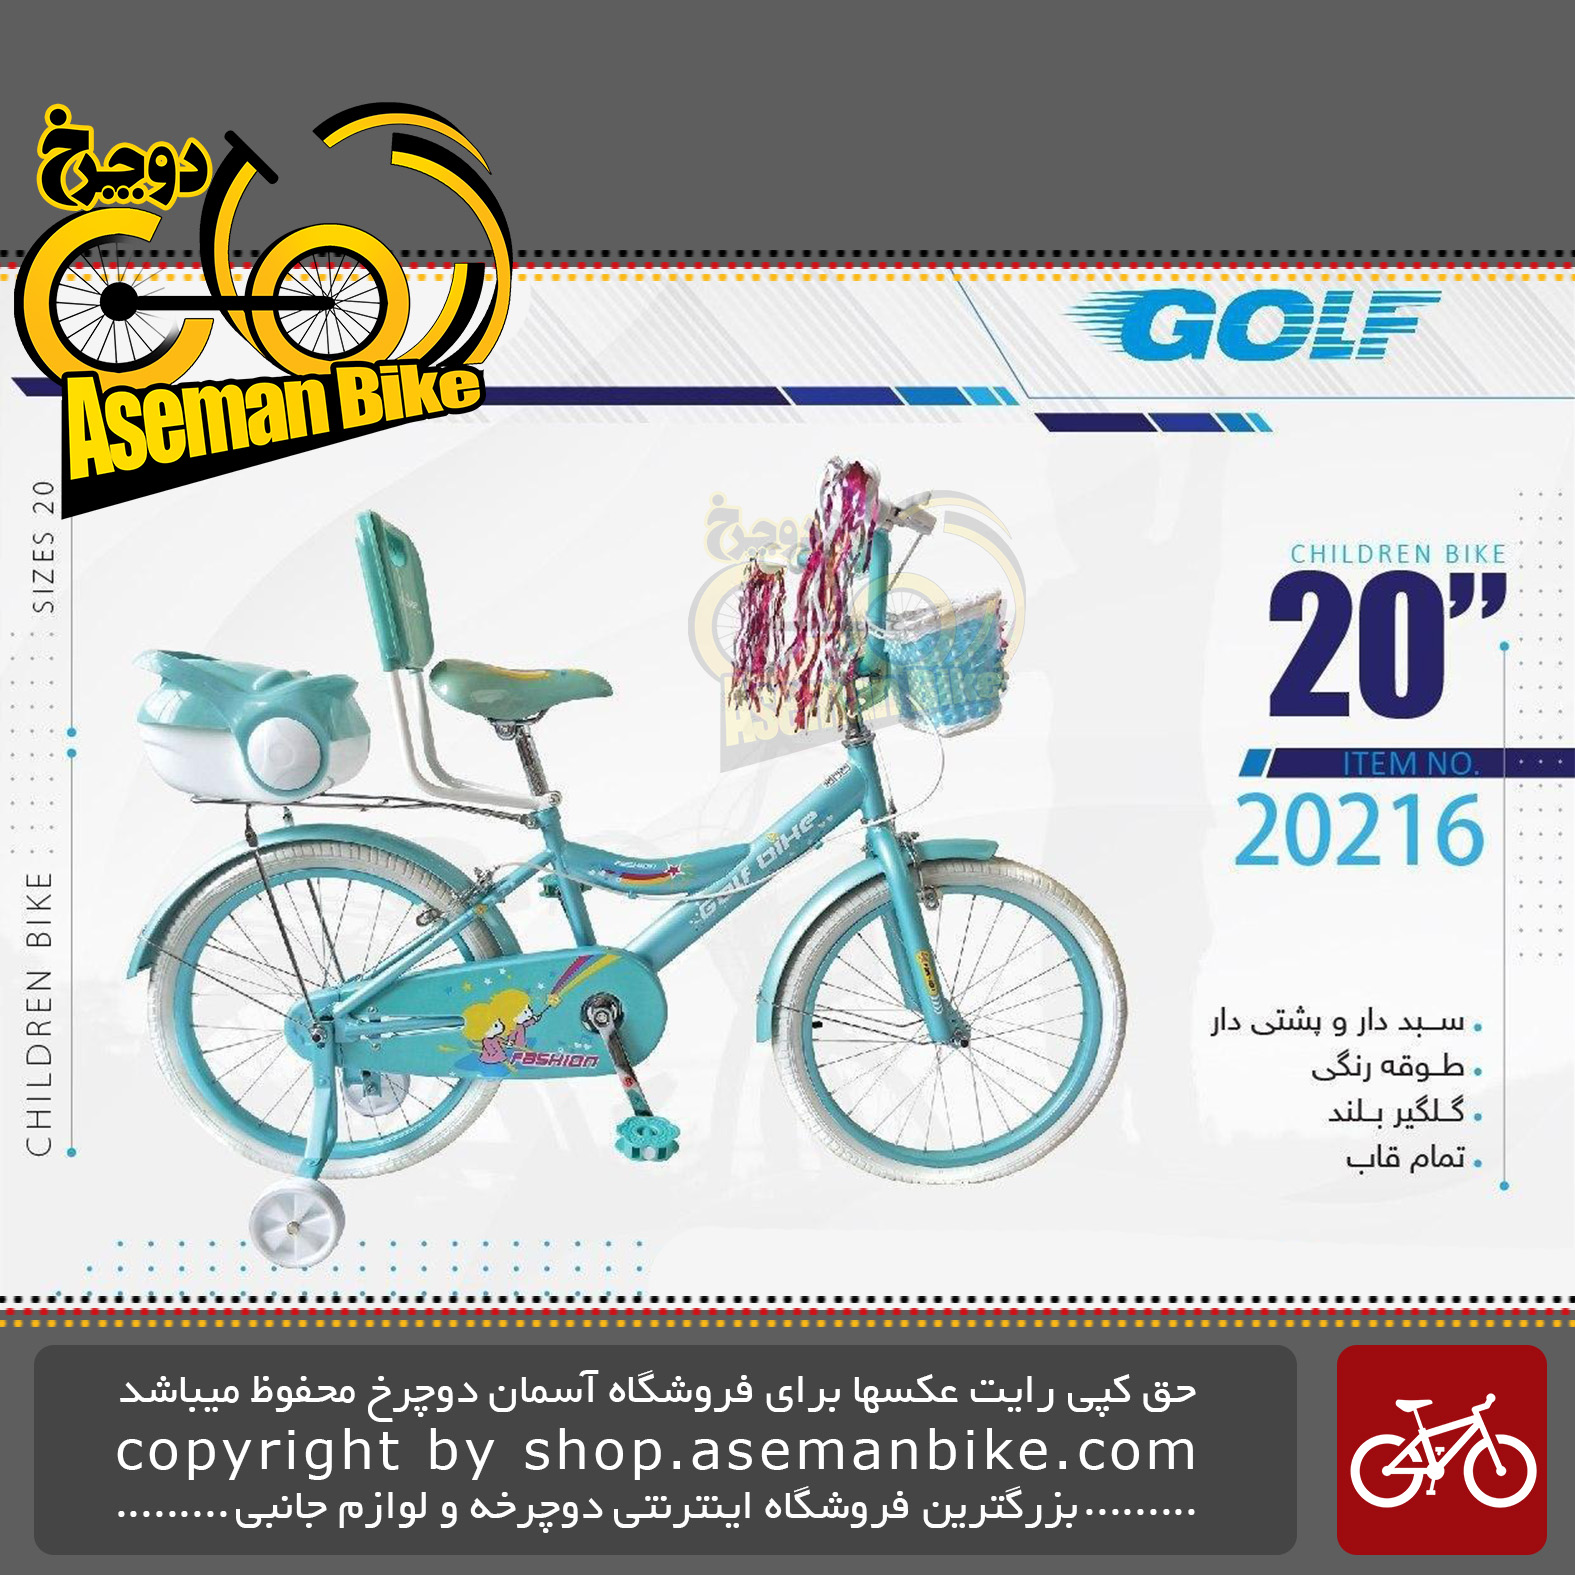 دوچرخه دخترانه بچگانه گلف سایز 20 پشتی دار صندوق دار سبد دار مدل 20216 GOLF Bicycle Children Bike Size 20 Model 20216